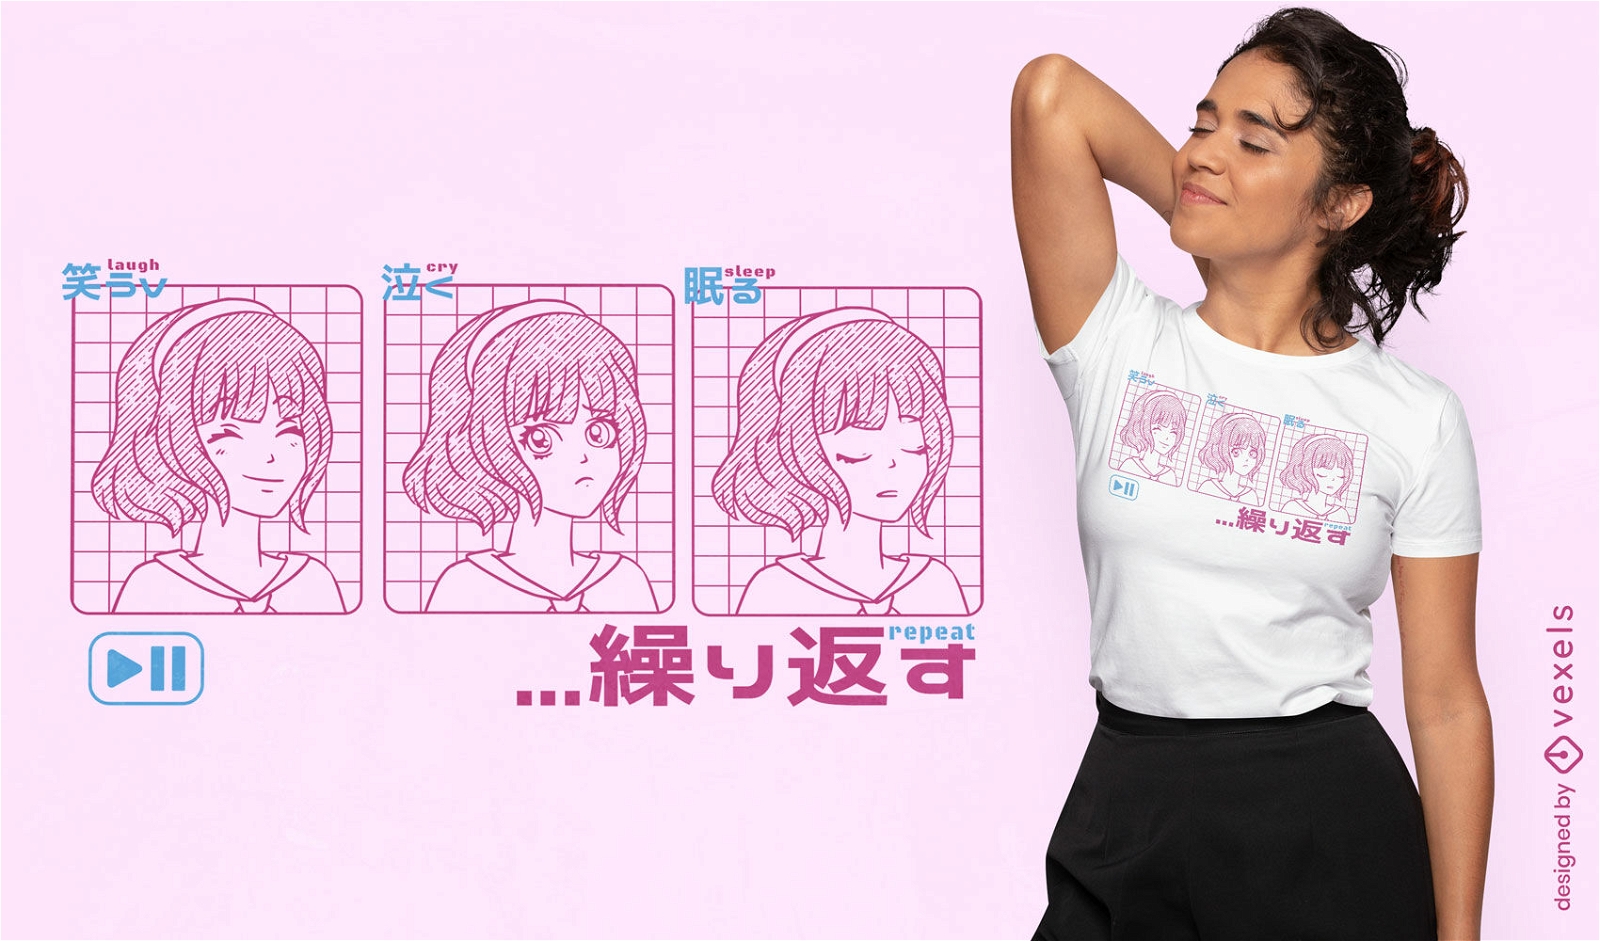 Lache Schrei Schlaf Anime M?dchen T-Shirt Design